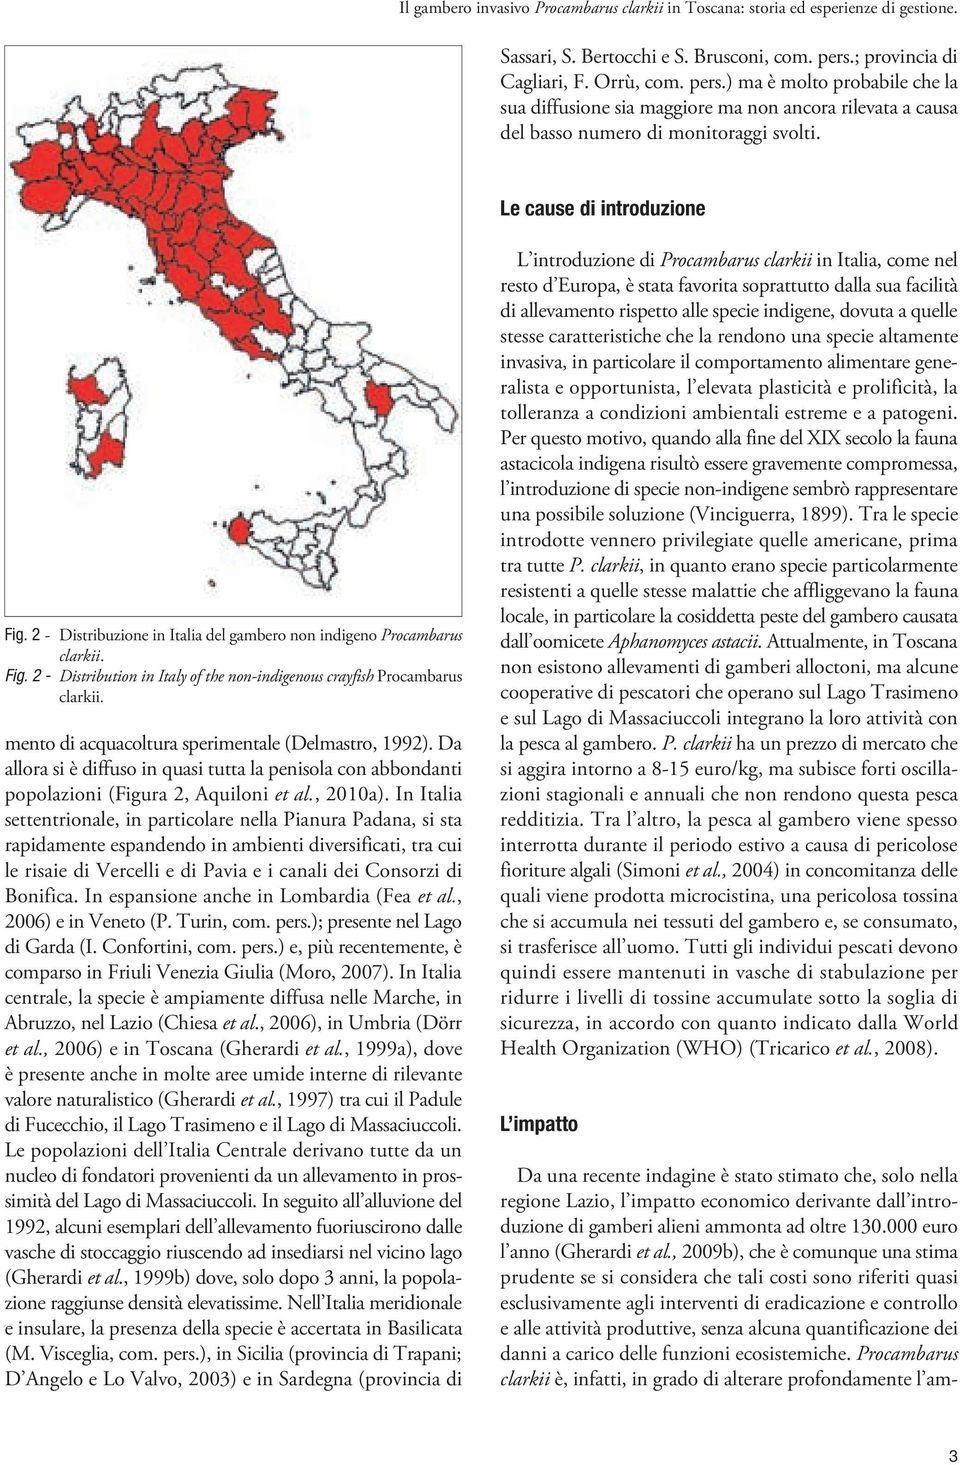 Le cause di introduzione Fig. 2 - Distribuzione in Italia del gambero non indigeno Procambarus clarkii. Fig. 2 - Distribution in Italy of the non-indigenous crayfish Procambarus clarkii.